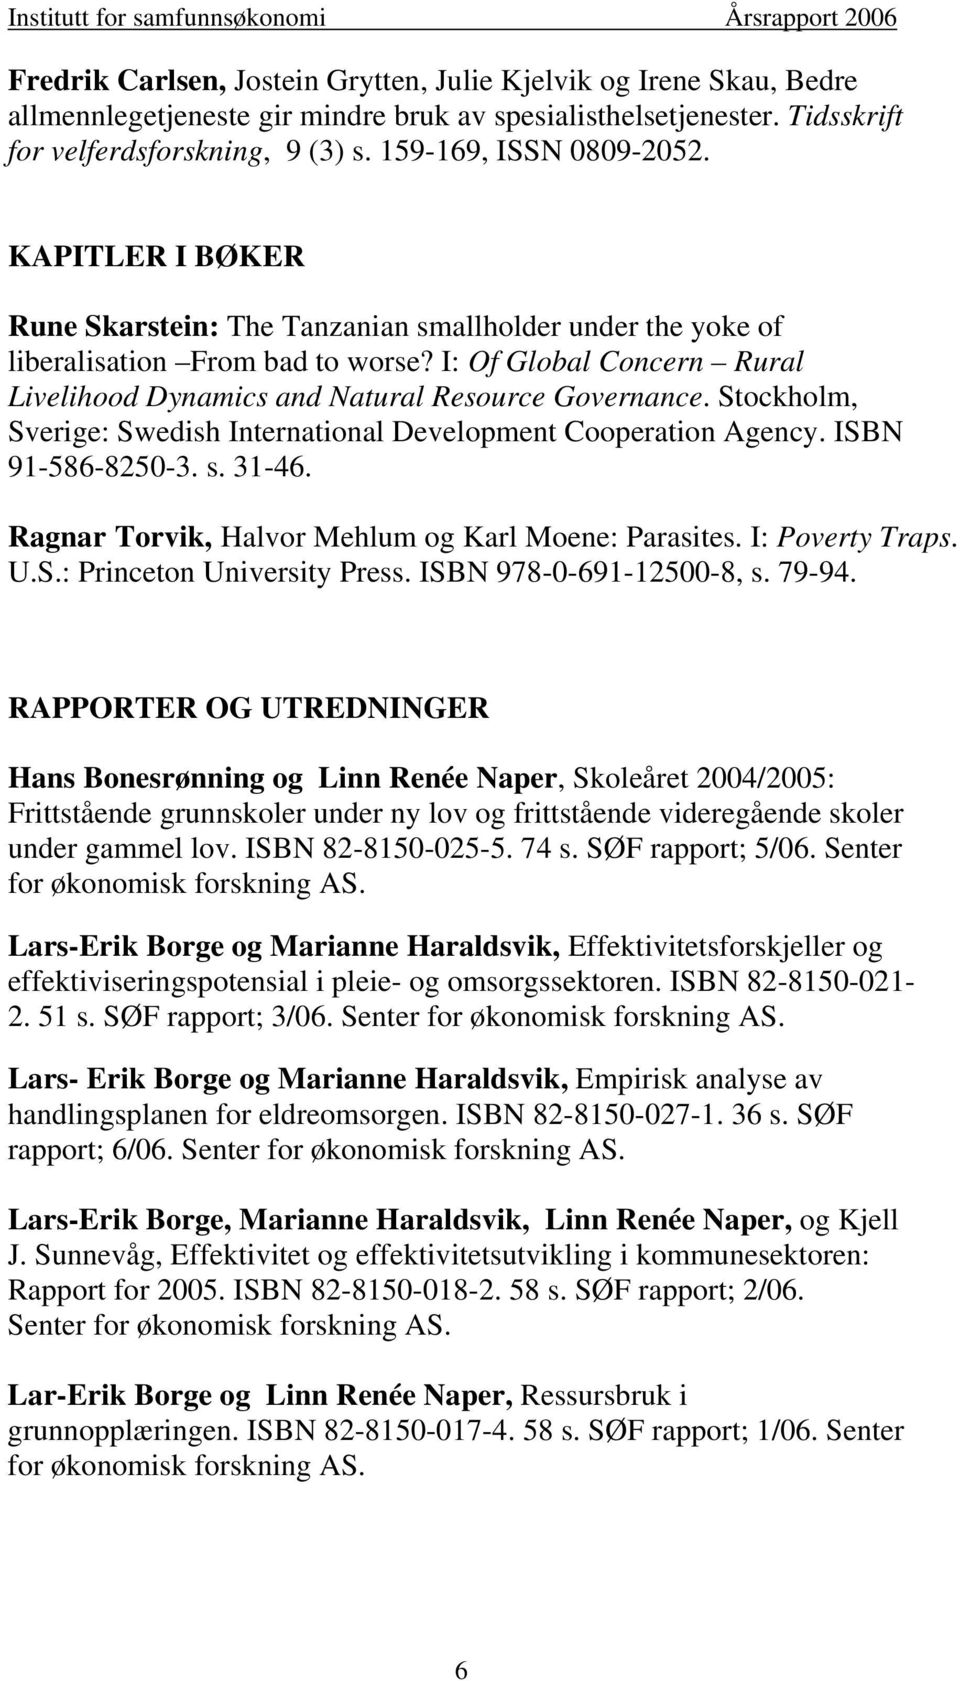 I: Of Global Concern Rural Livelihood Dynamics and Natural Resource Governance. Stockholm, Sverige: Swedish International Development Cooperation Agency. ISBN 91-586-8250-3. s. 31-46.